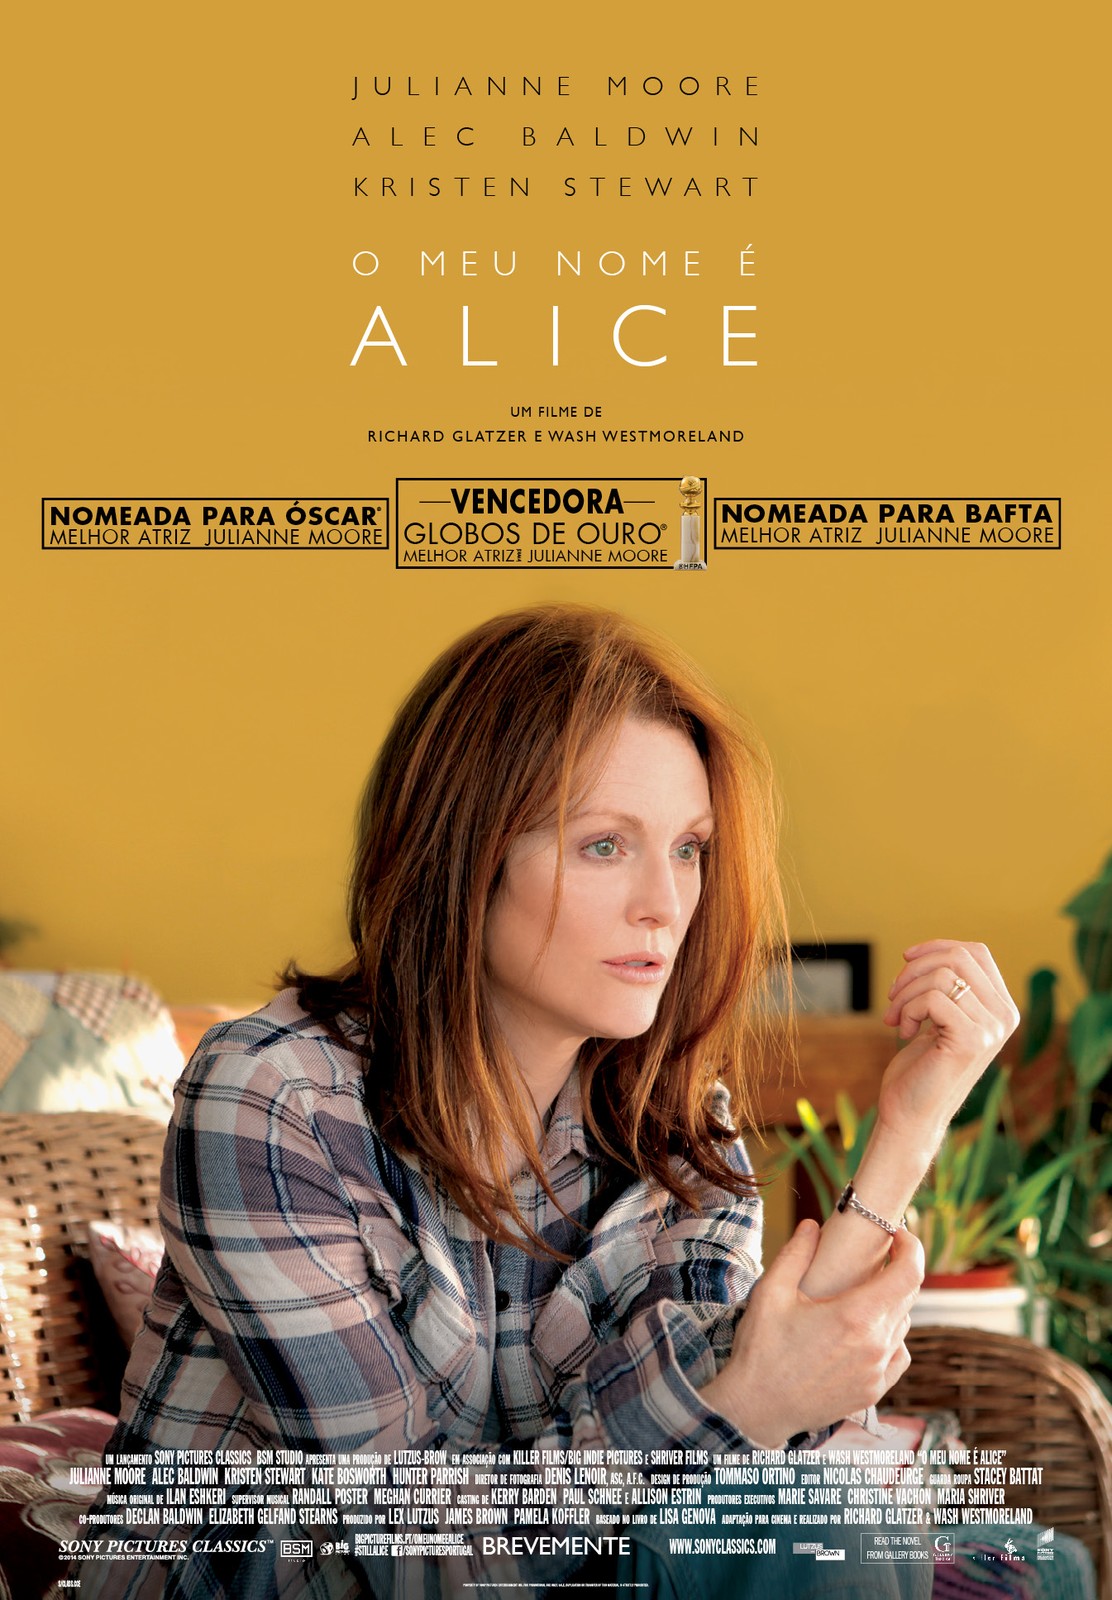 Exibição do Filme "O Meu Nome é Alice" na Biblioteca Municipal da Póvoa de Santa Iria